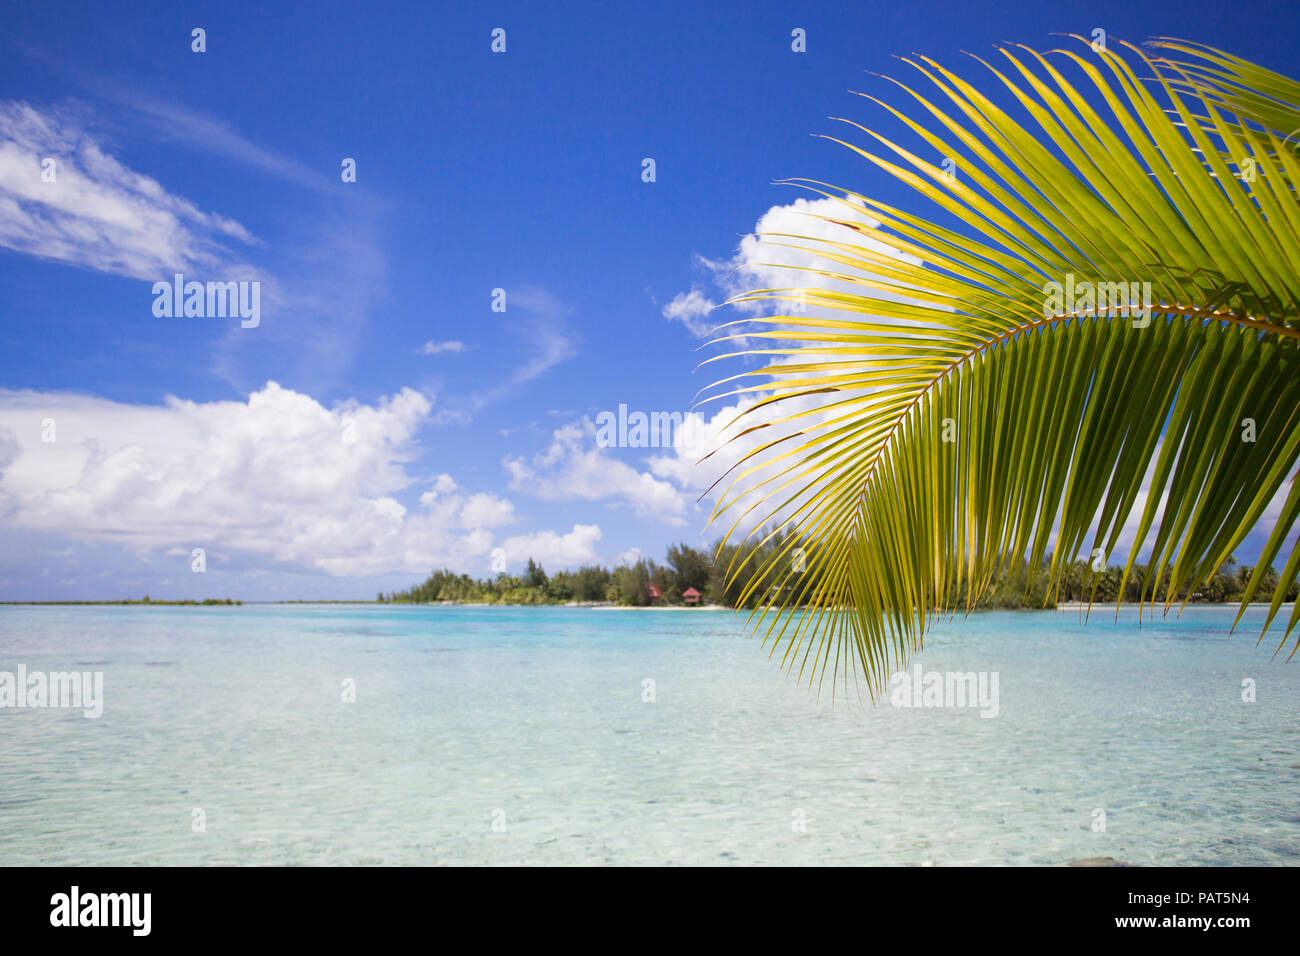 La Polinesia Francesa, la sociedad isla de Bora Bora. Waterscape escénica con frondas de palma. Foto de stock